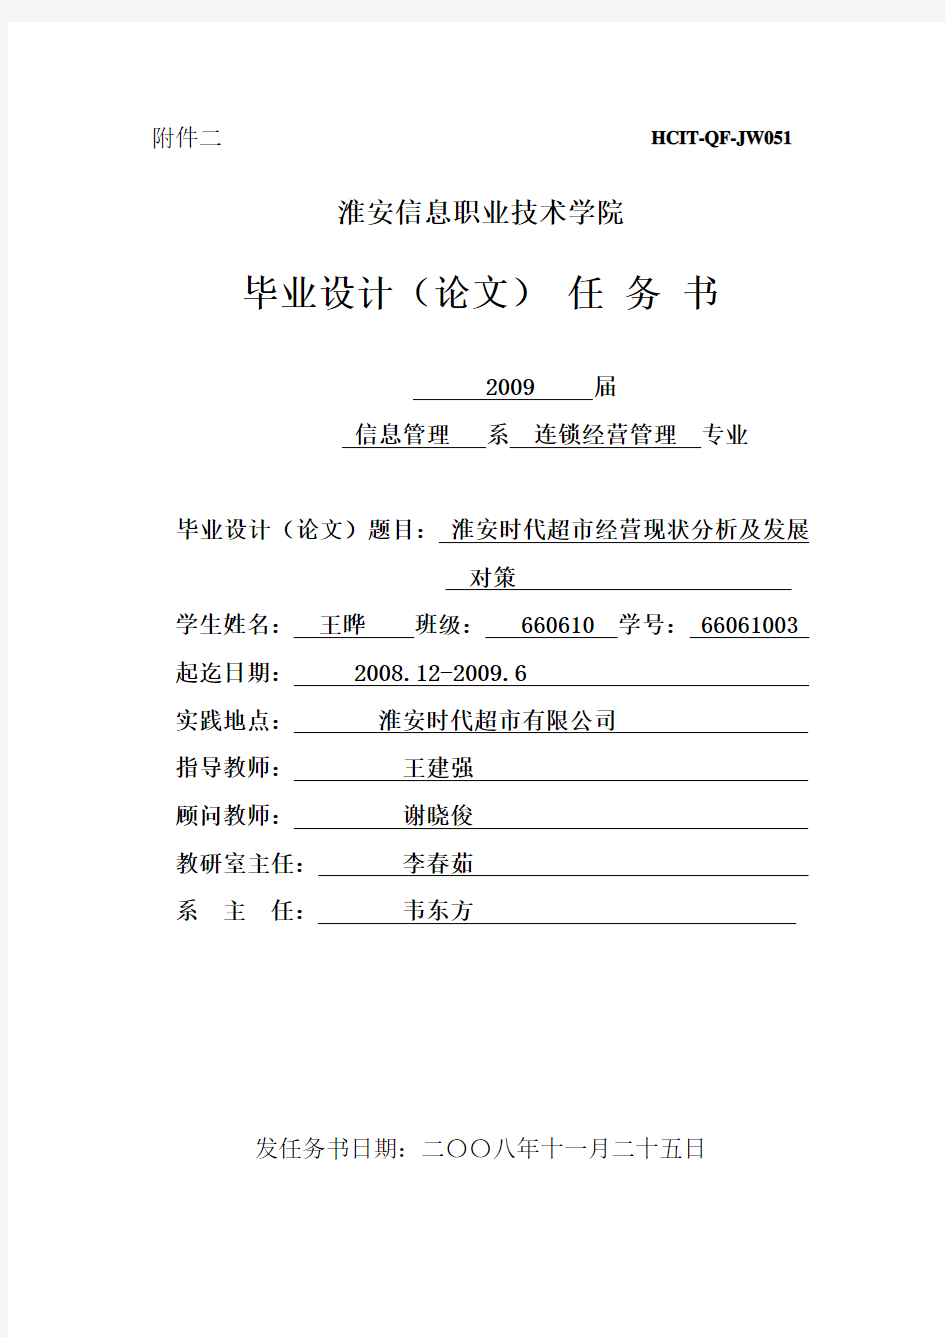 填写参考_毕业设计(论文)任务书-wang1220